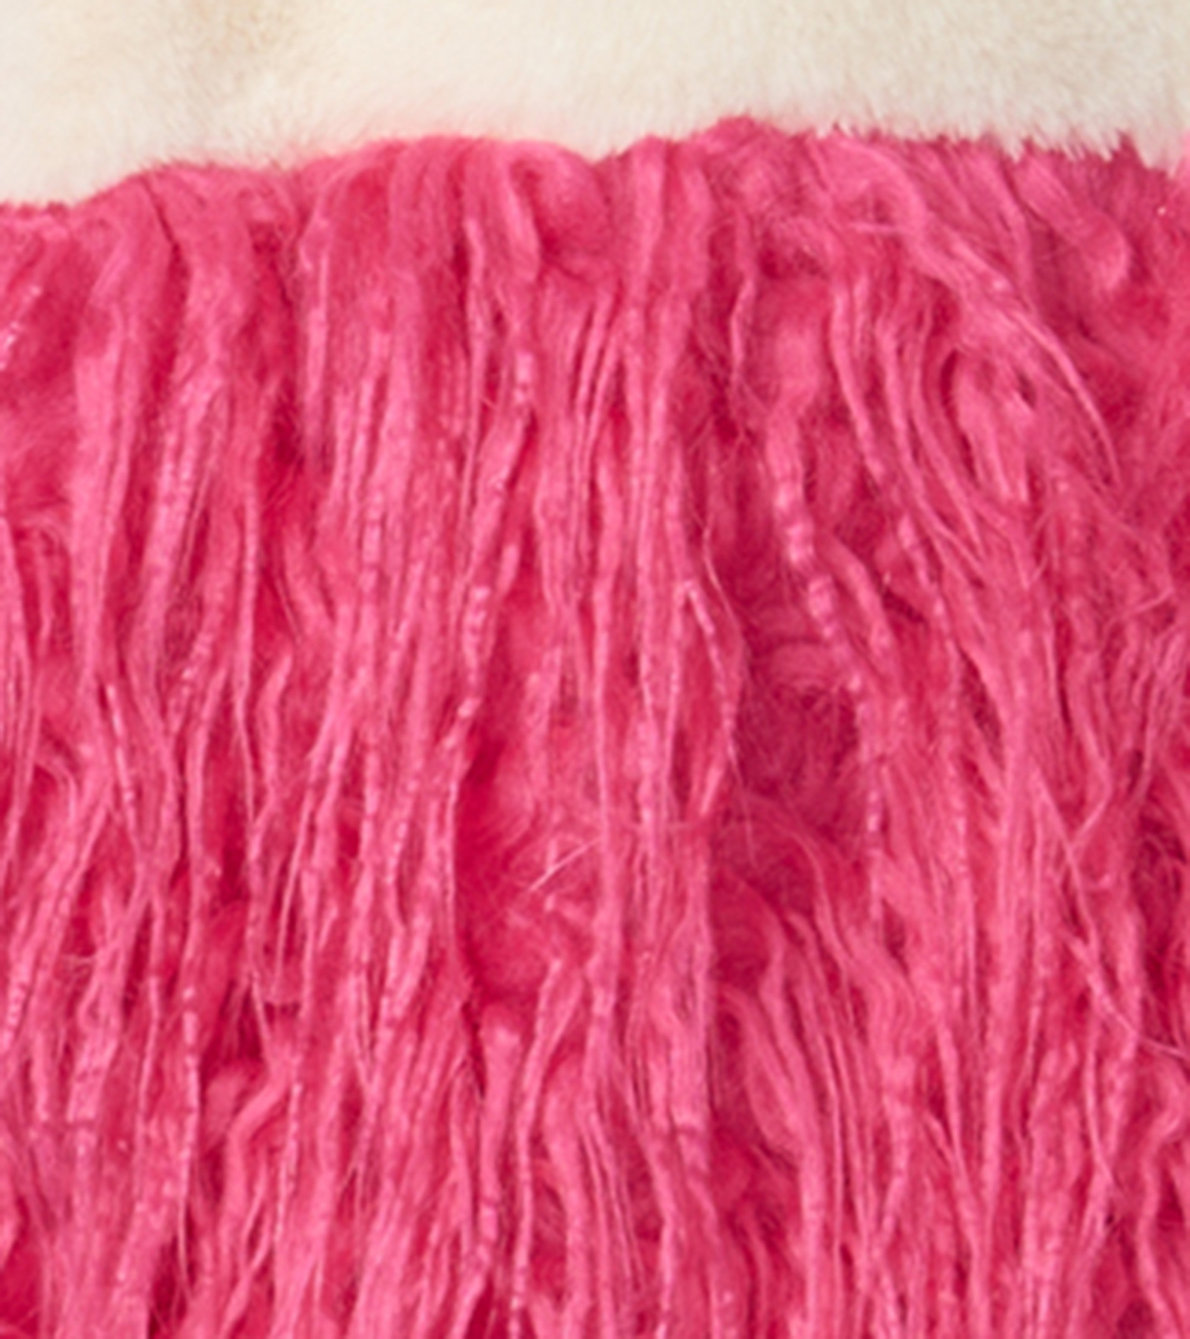 View larger image of Girls Sheer Pink Faux Fur Jacket